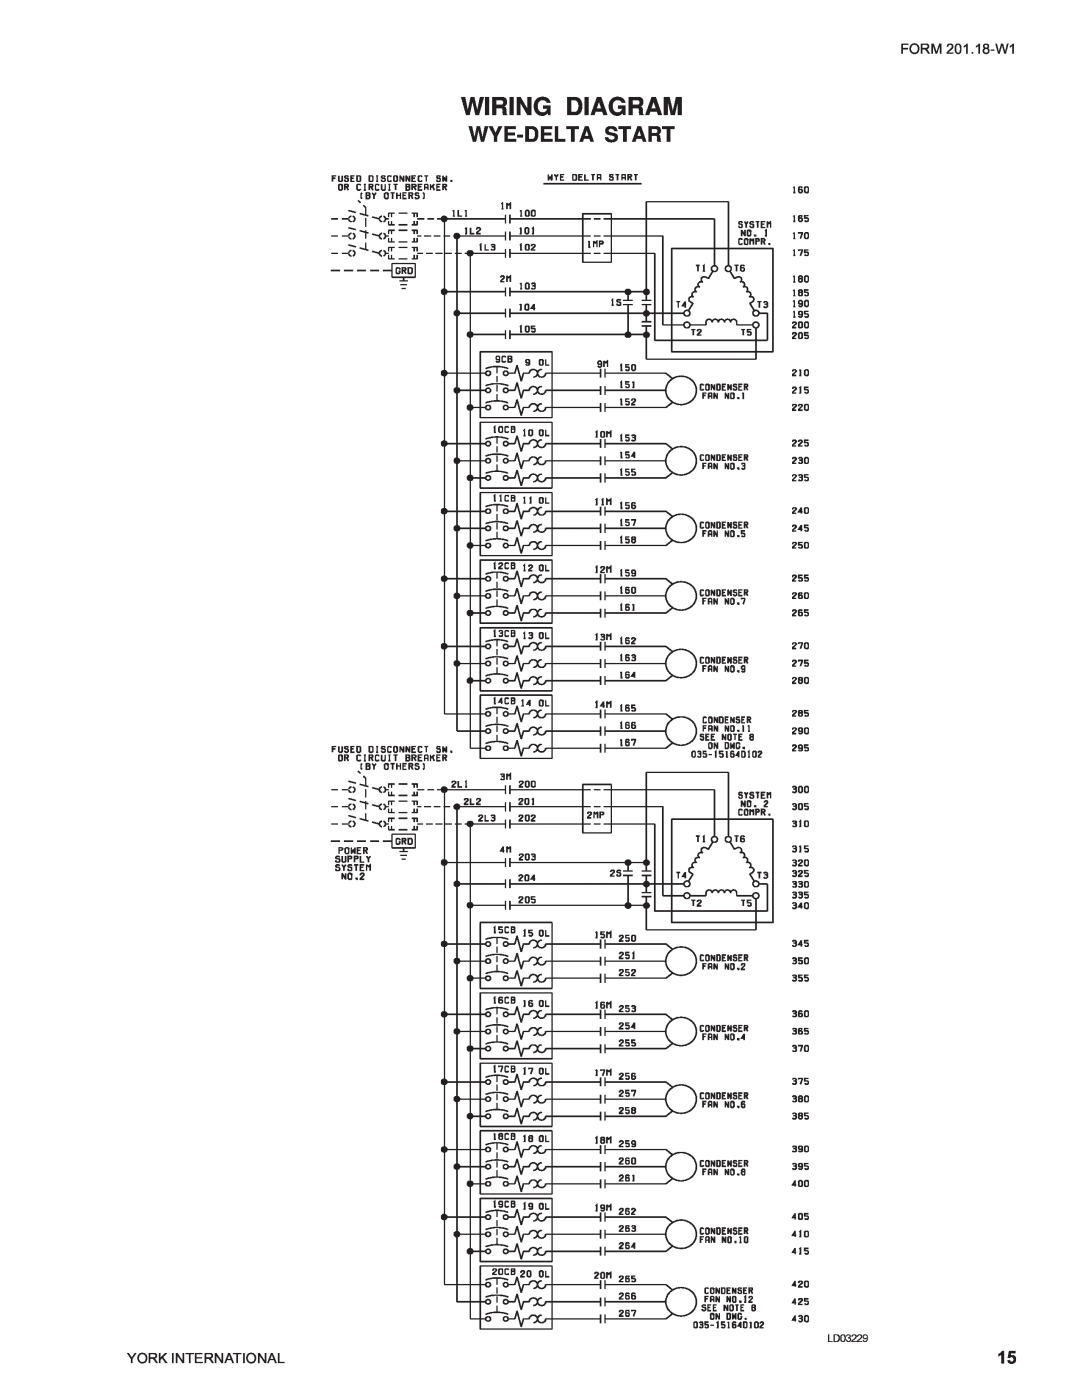 York YCAS0230 manual LD03229, Wiring Diagram, Wye-Deltastart 